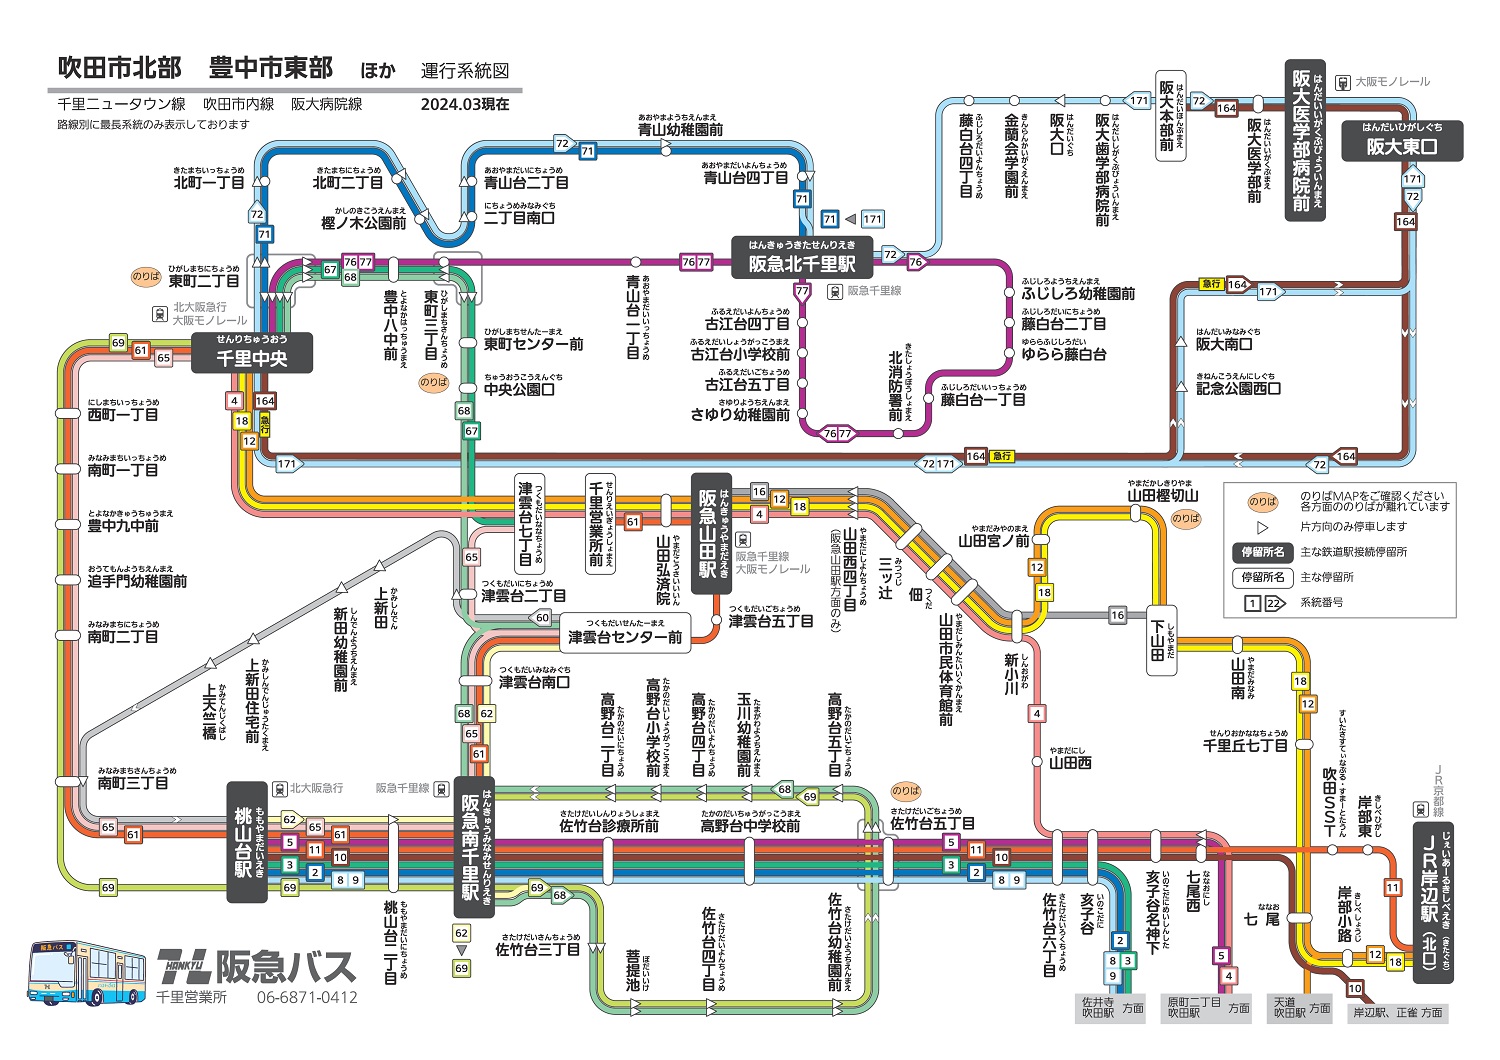 運行系統図 千里営業所2 路線バス 阪急バス